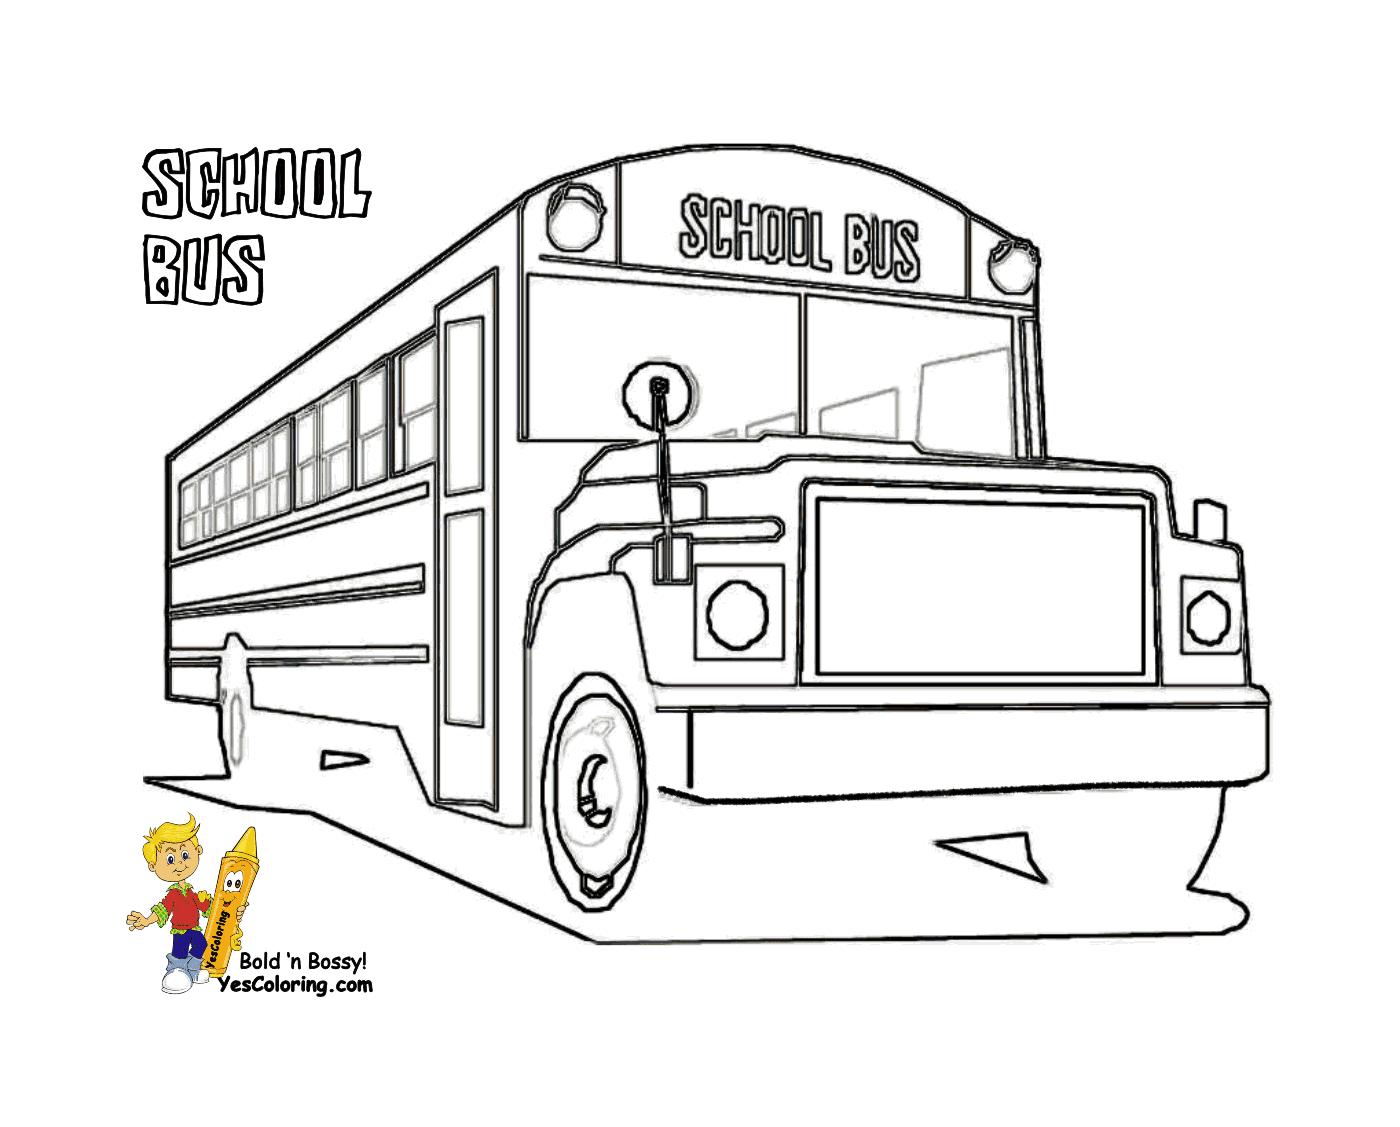   Un bus scolaire est à l'arrêt 